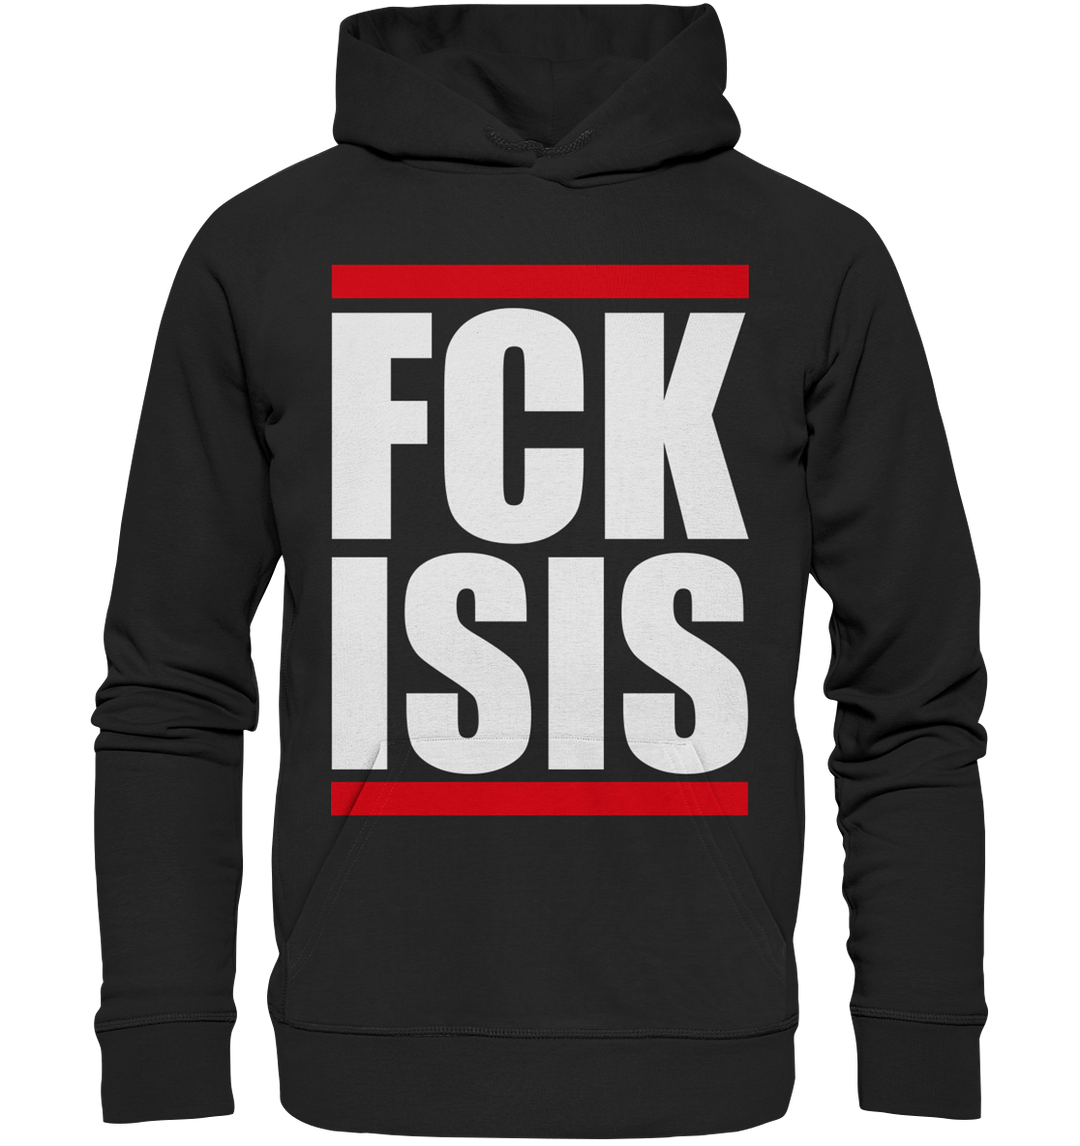 FCK ISIS - Premium Unisex Hoodie